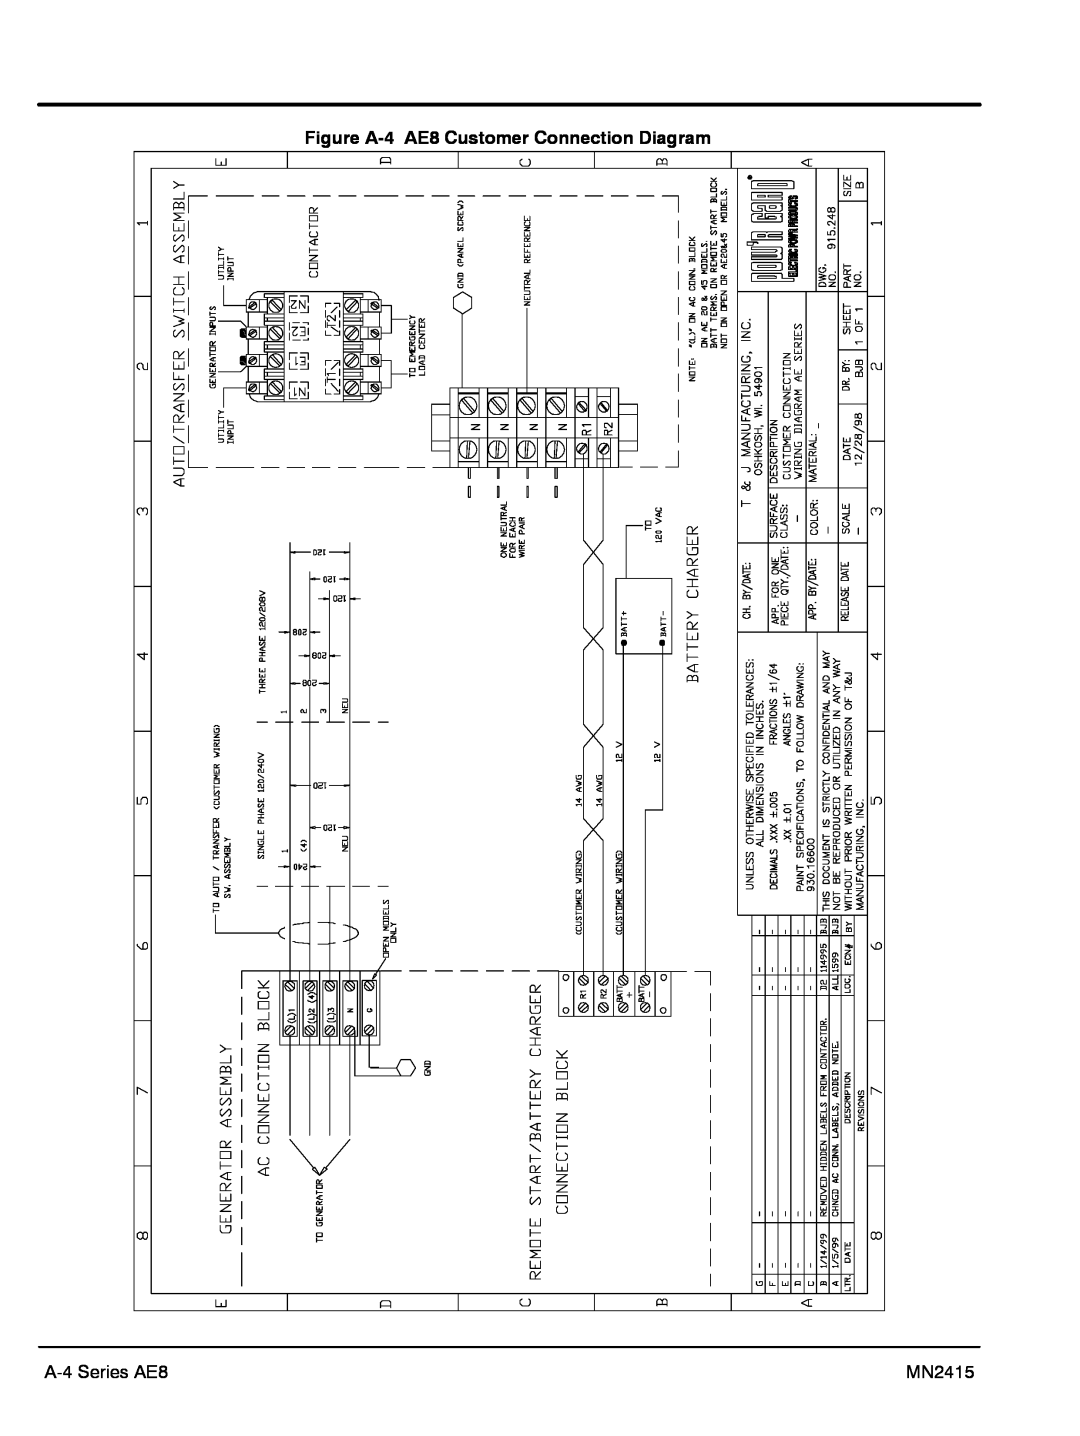 Baldor AE11, AE10, AE25 manual Figure A-4 AE8 Customer Connection Diagram, A-4 Series AE8, MN2415 